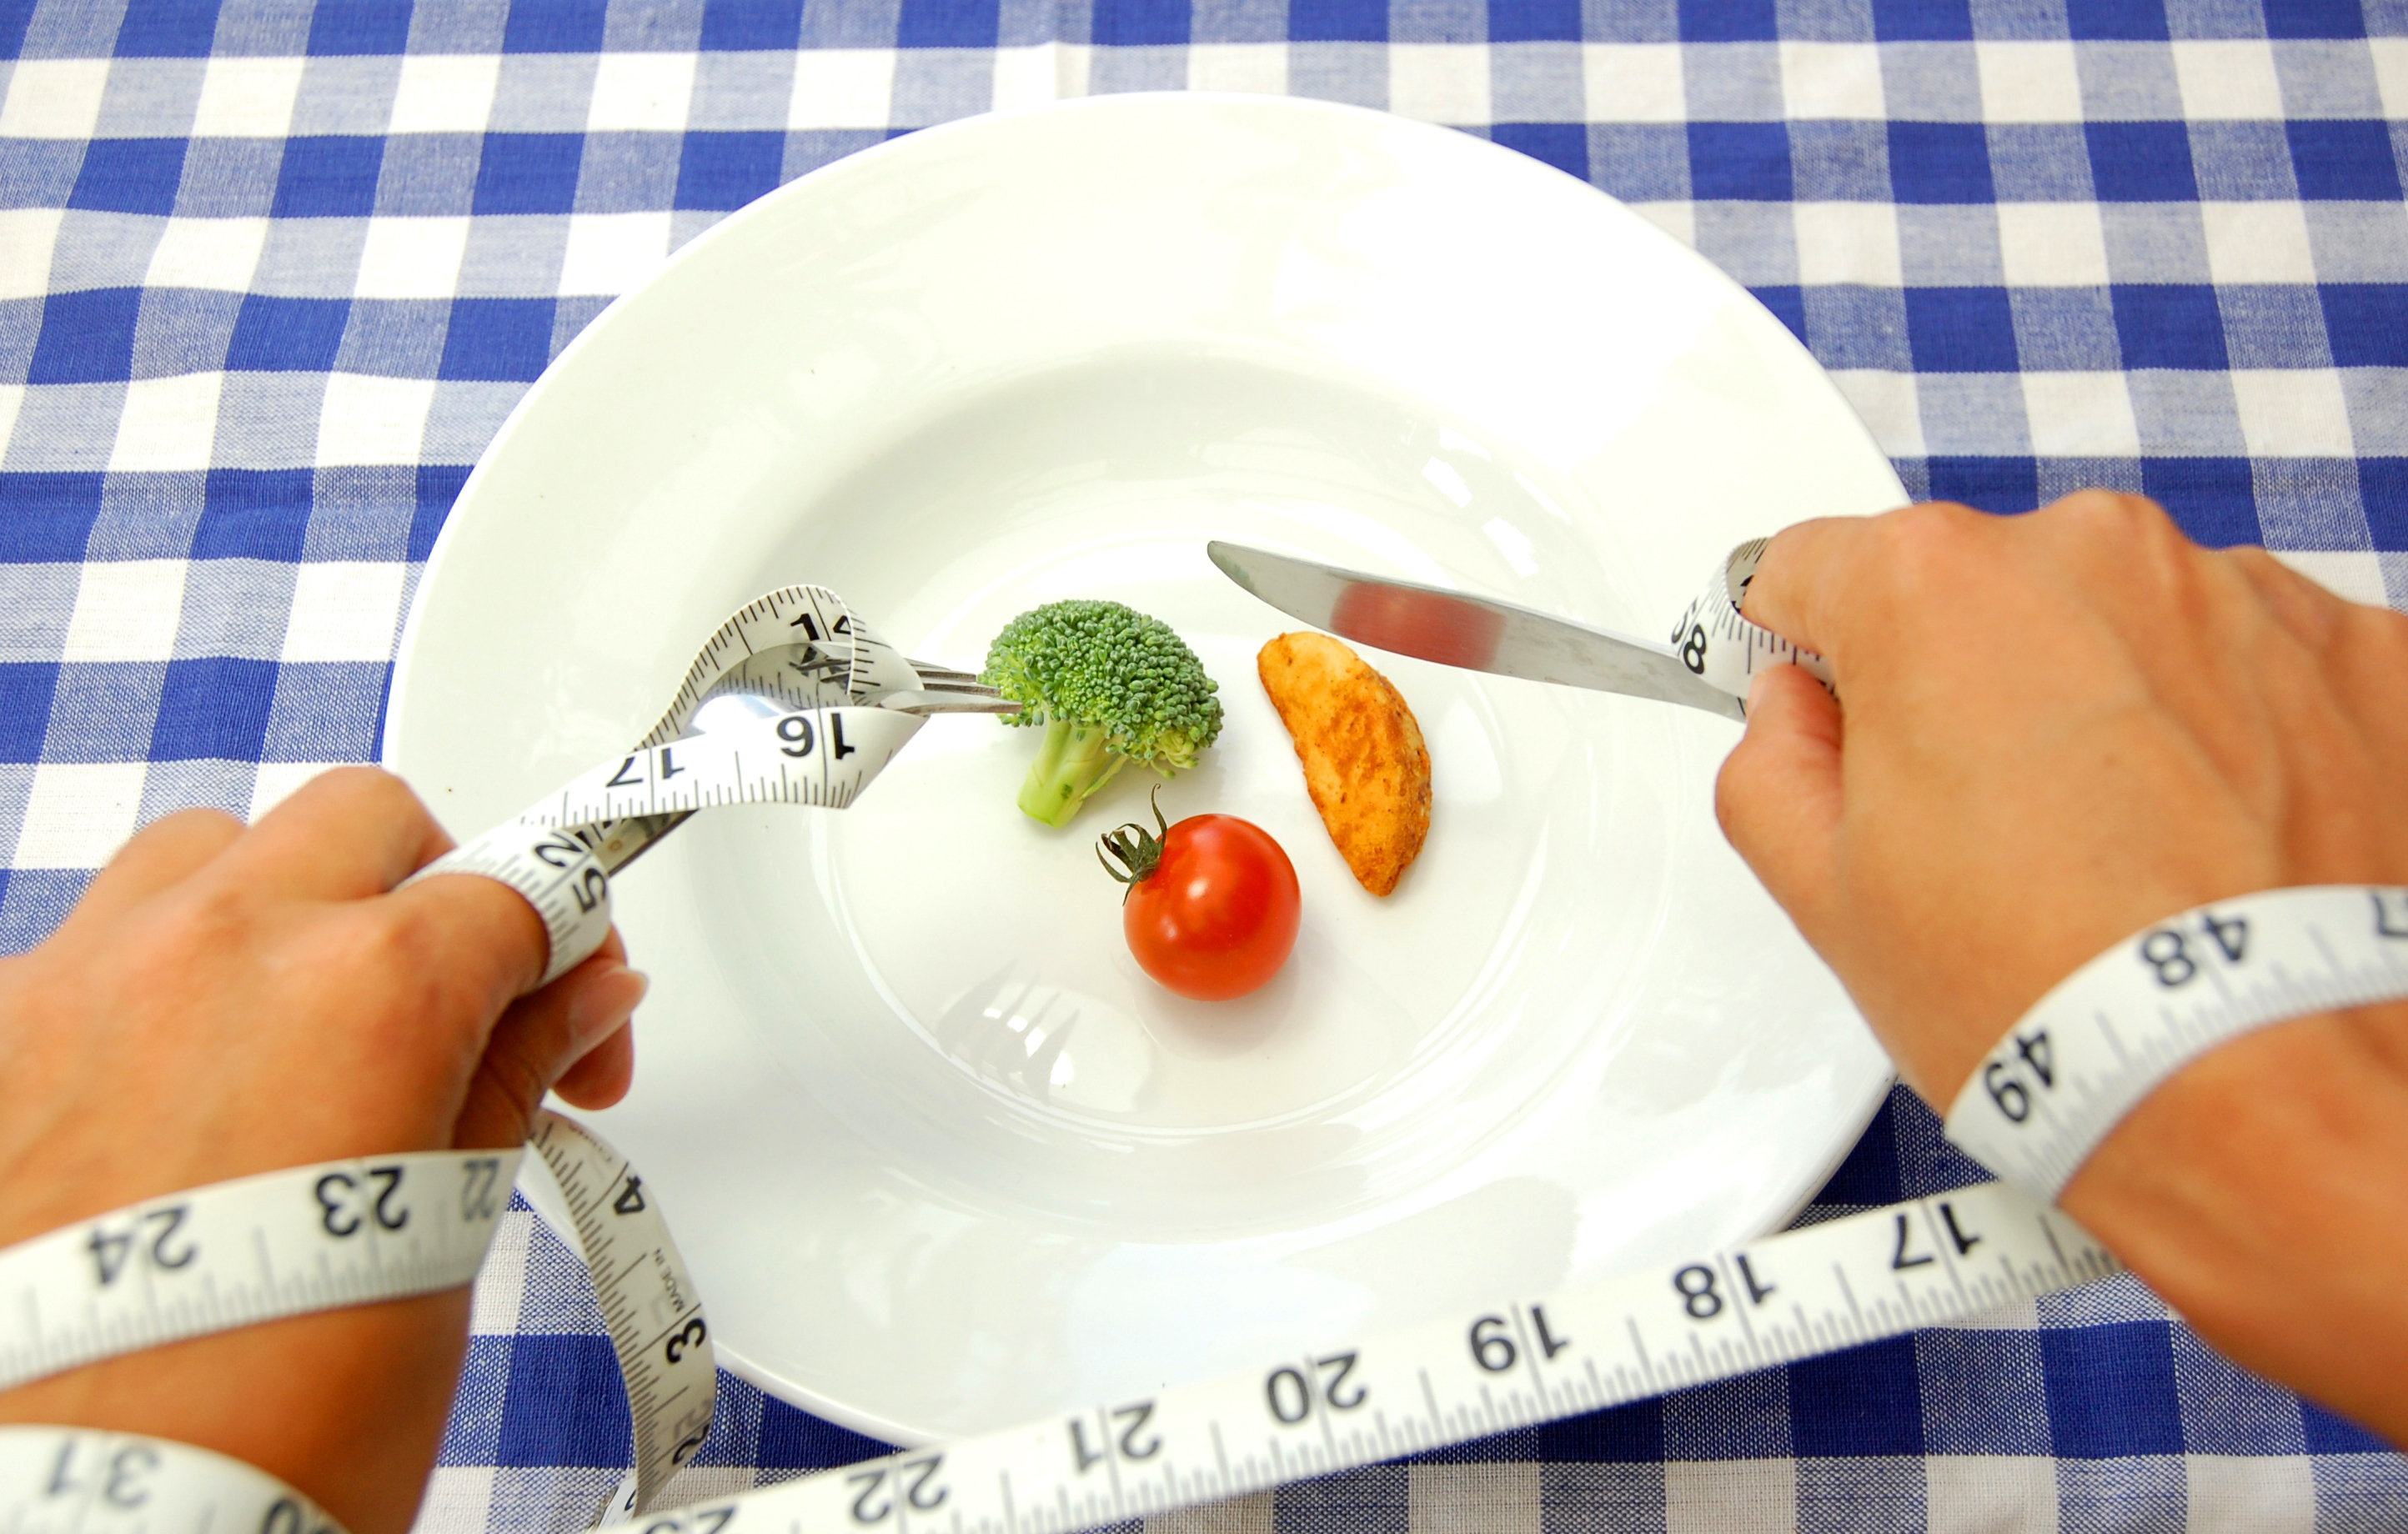 Погл щать пищу. Ограничения в еде. Снижение калорийности пищи. Голодание питание. Опасные диеты.